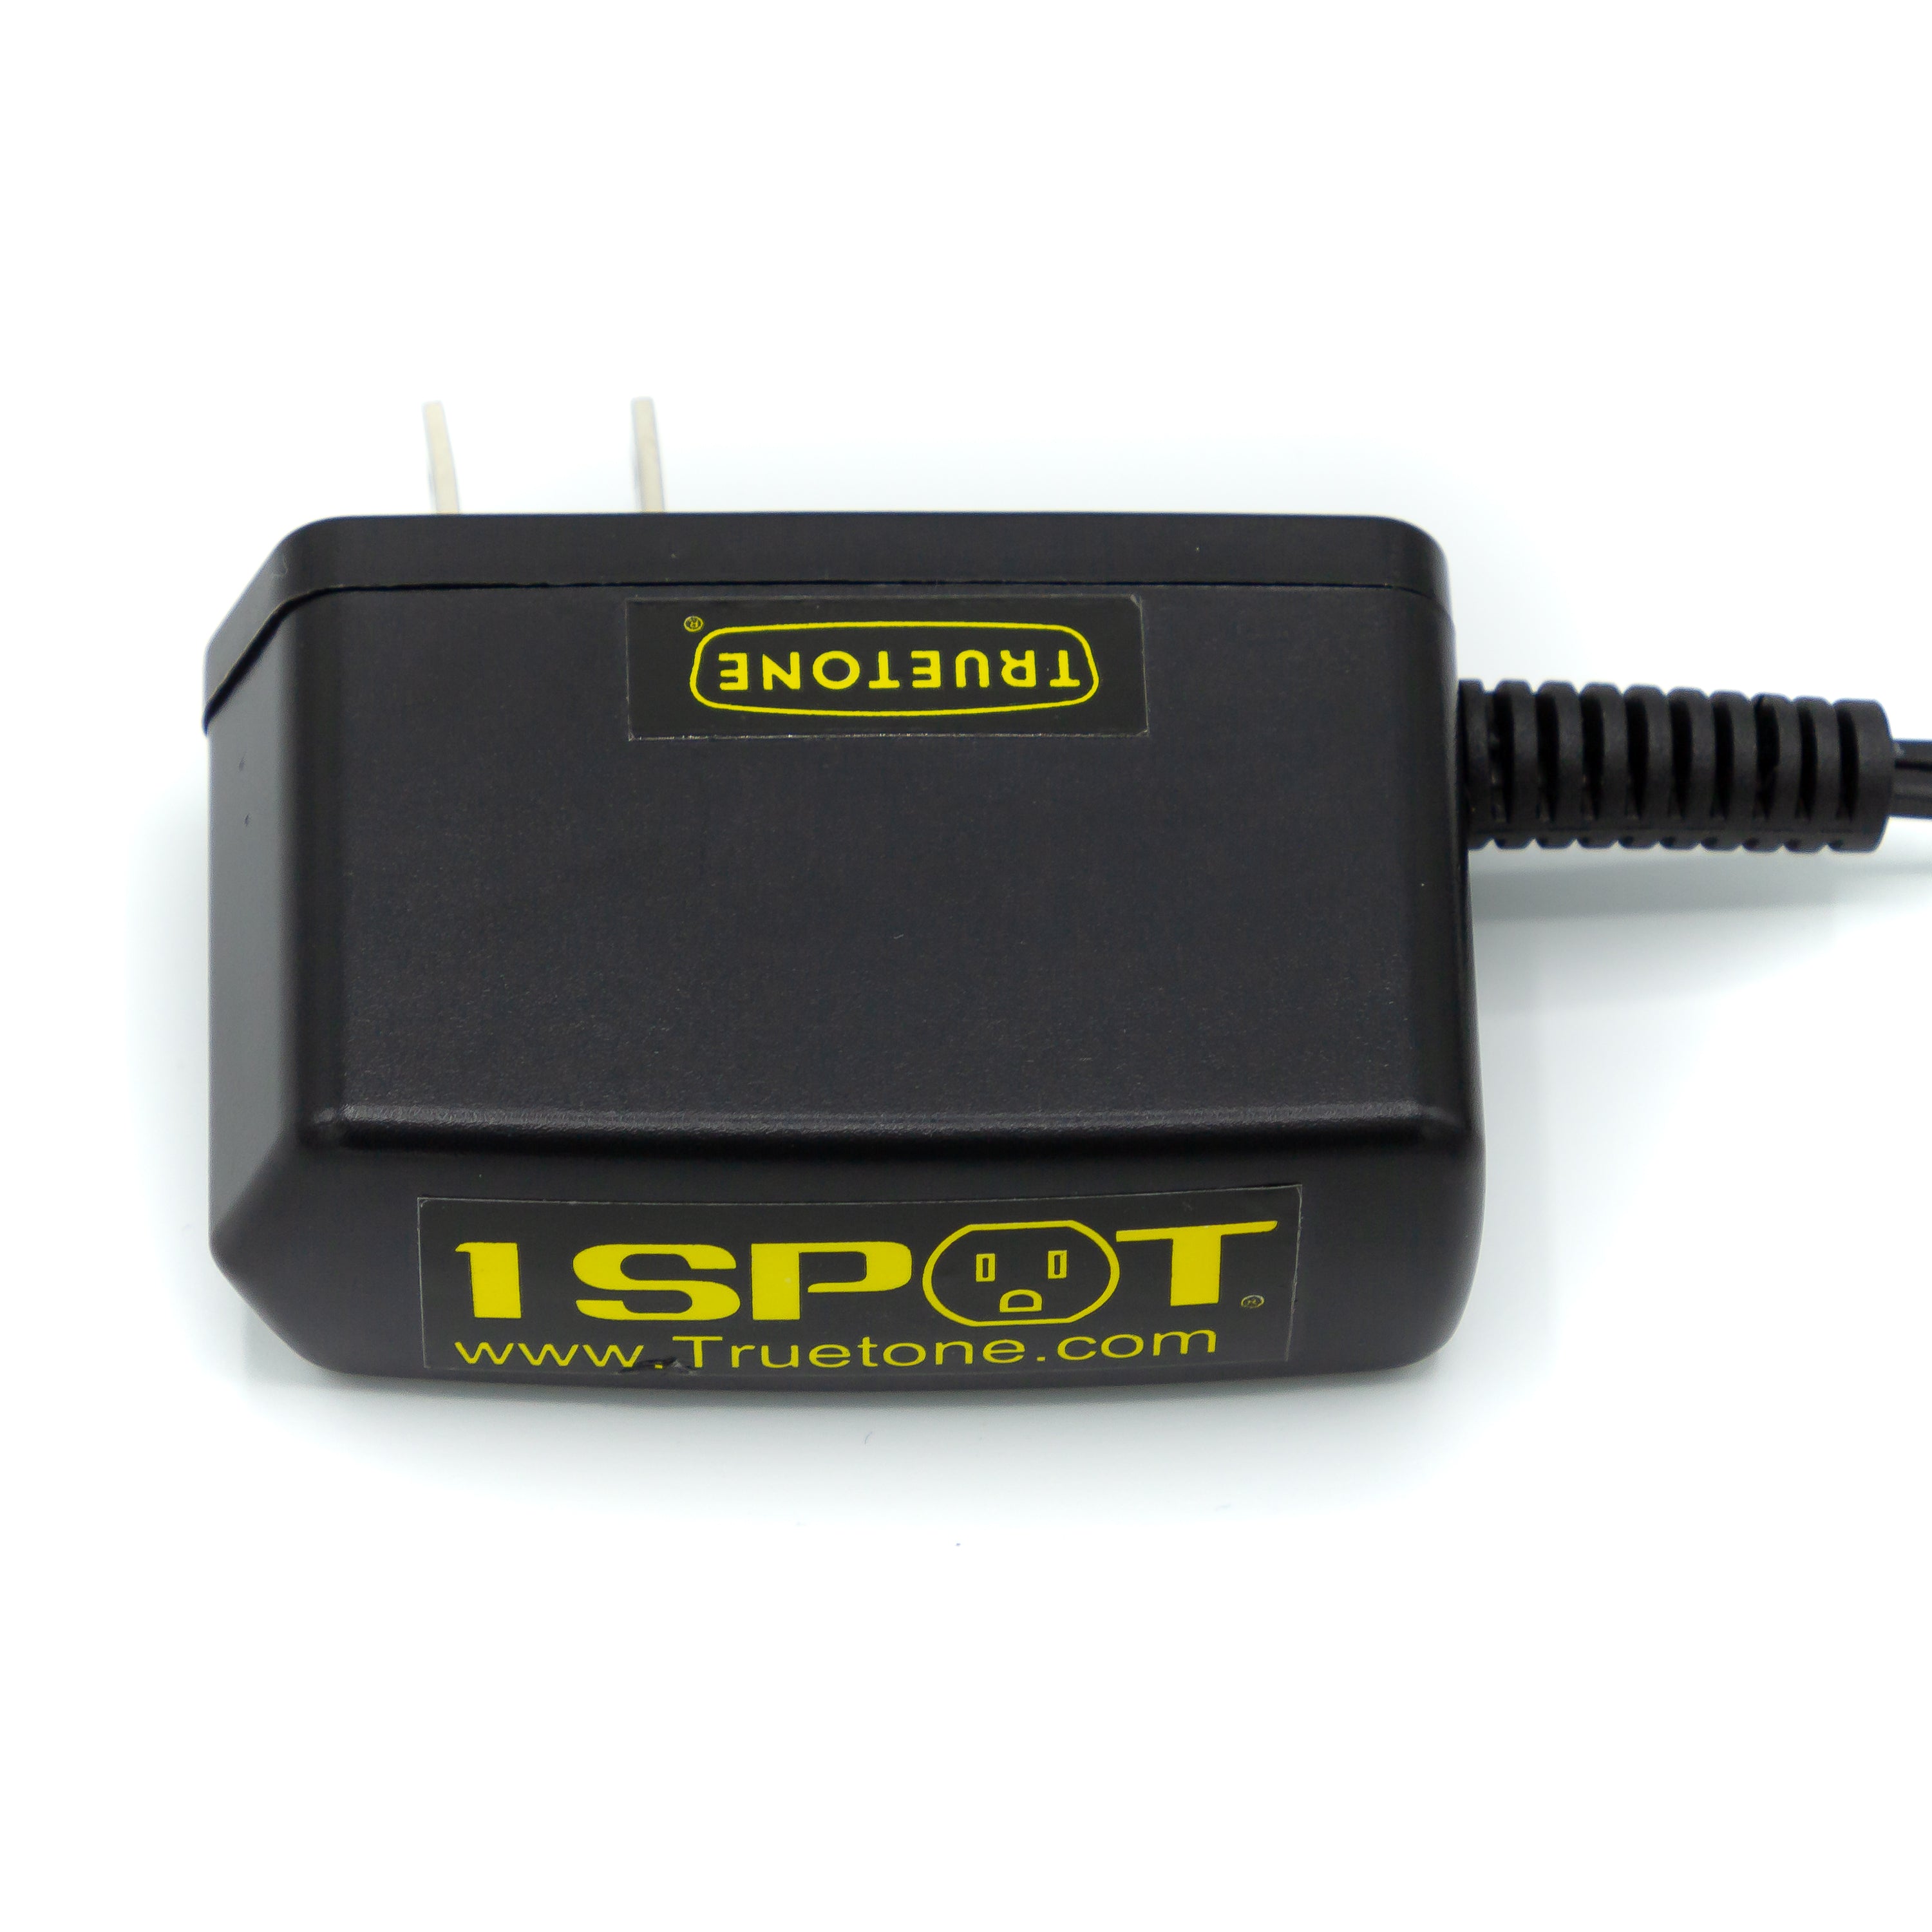 1SPOT - Power Adapter | Mass Street Music